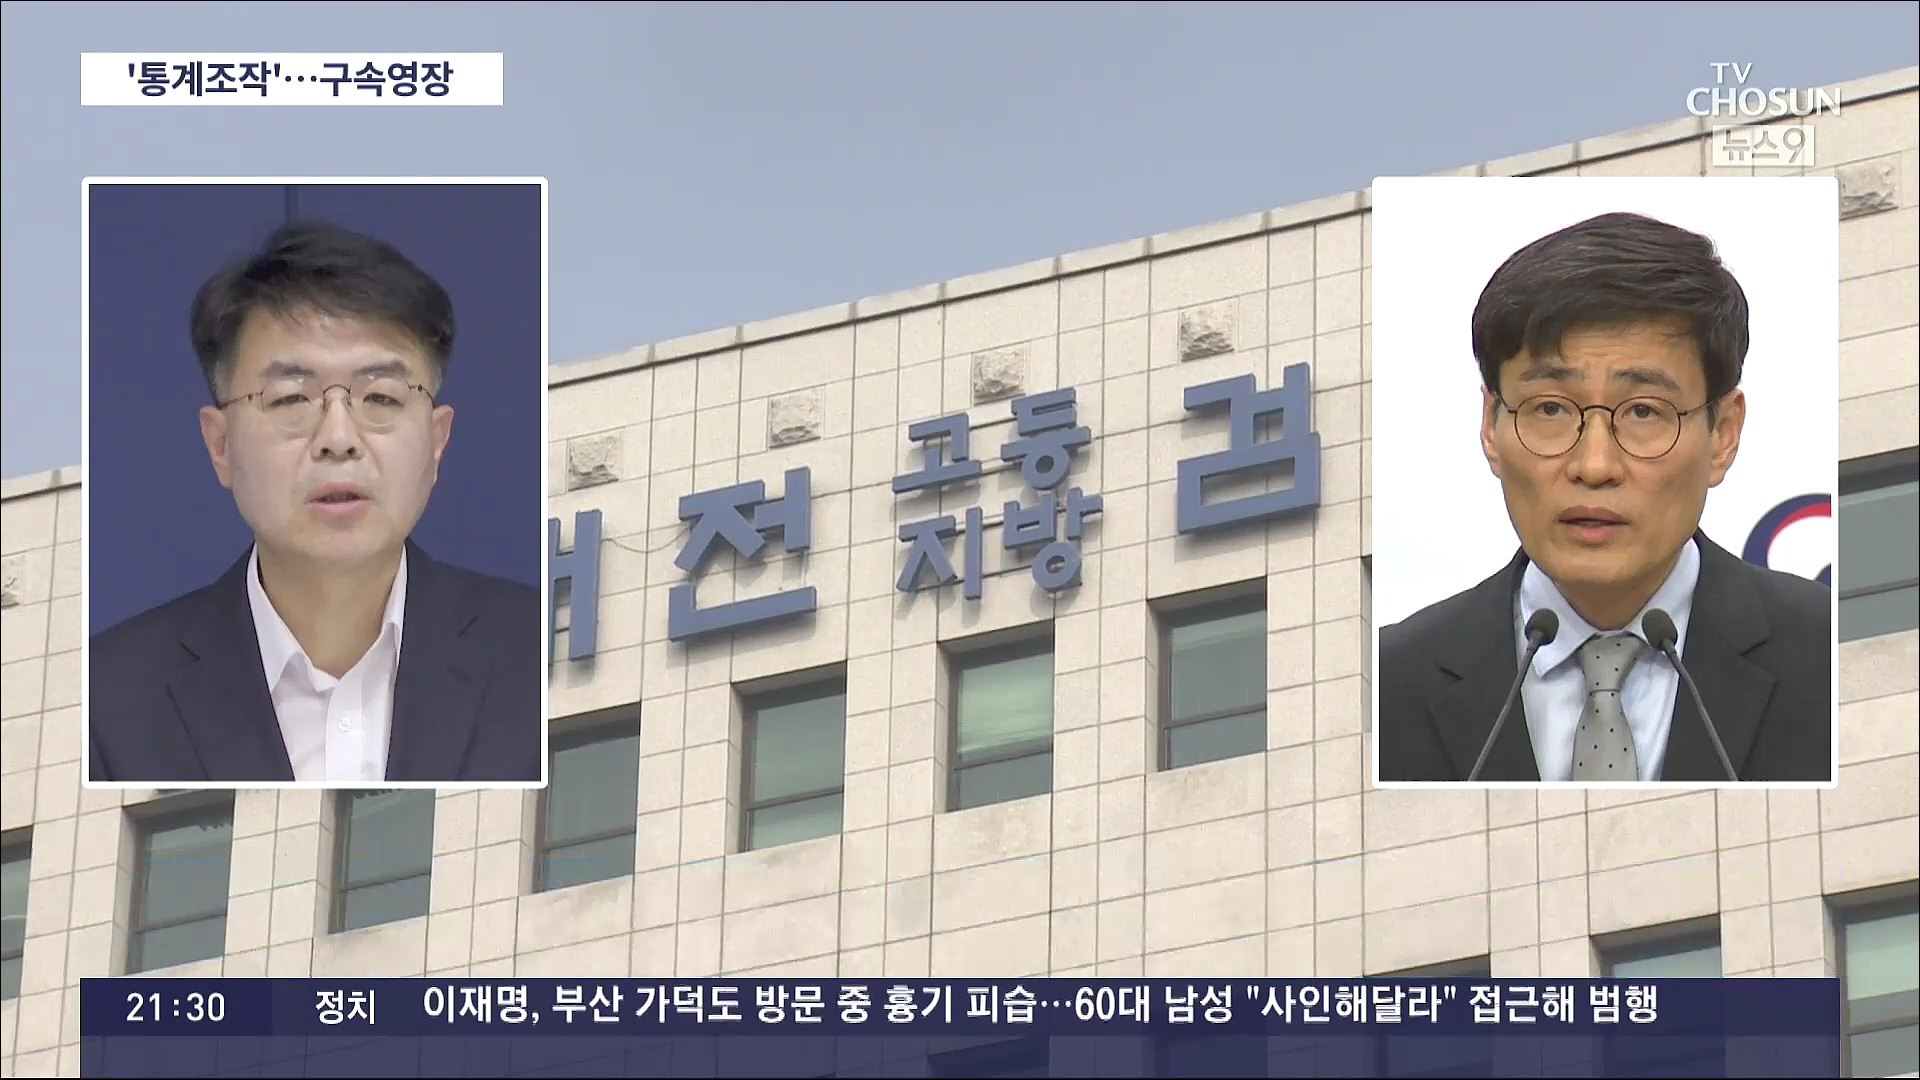 검찰 '통계조작 의혹' 윤성원 前 국토부 1차관·이문기 前 행복청장 구속영장 청구